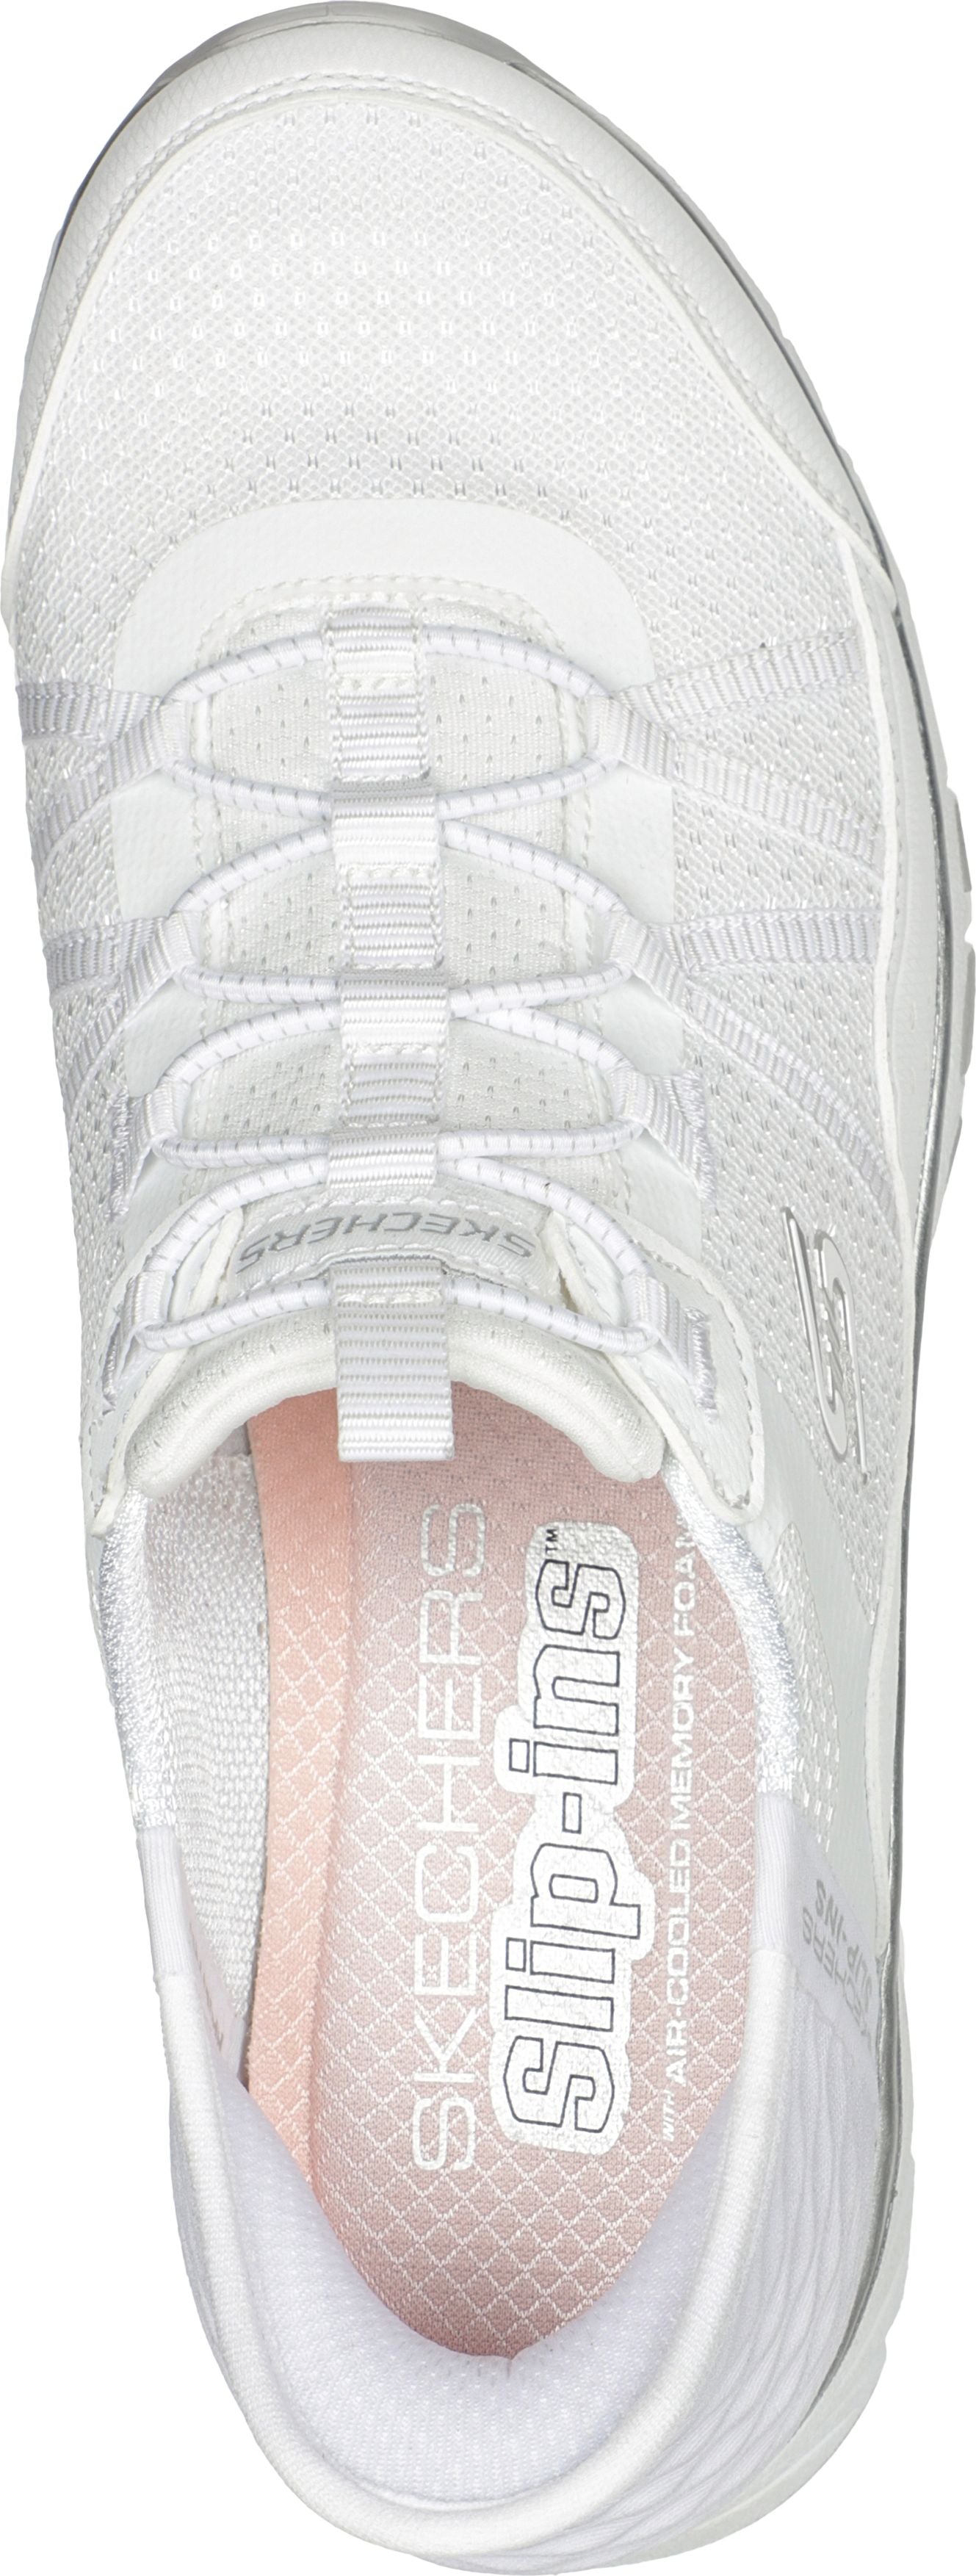 Skechers Shoes Gratis Sport White